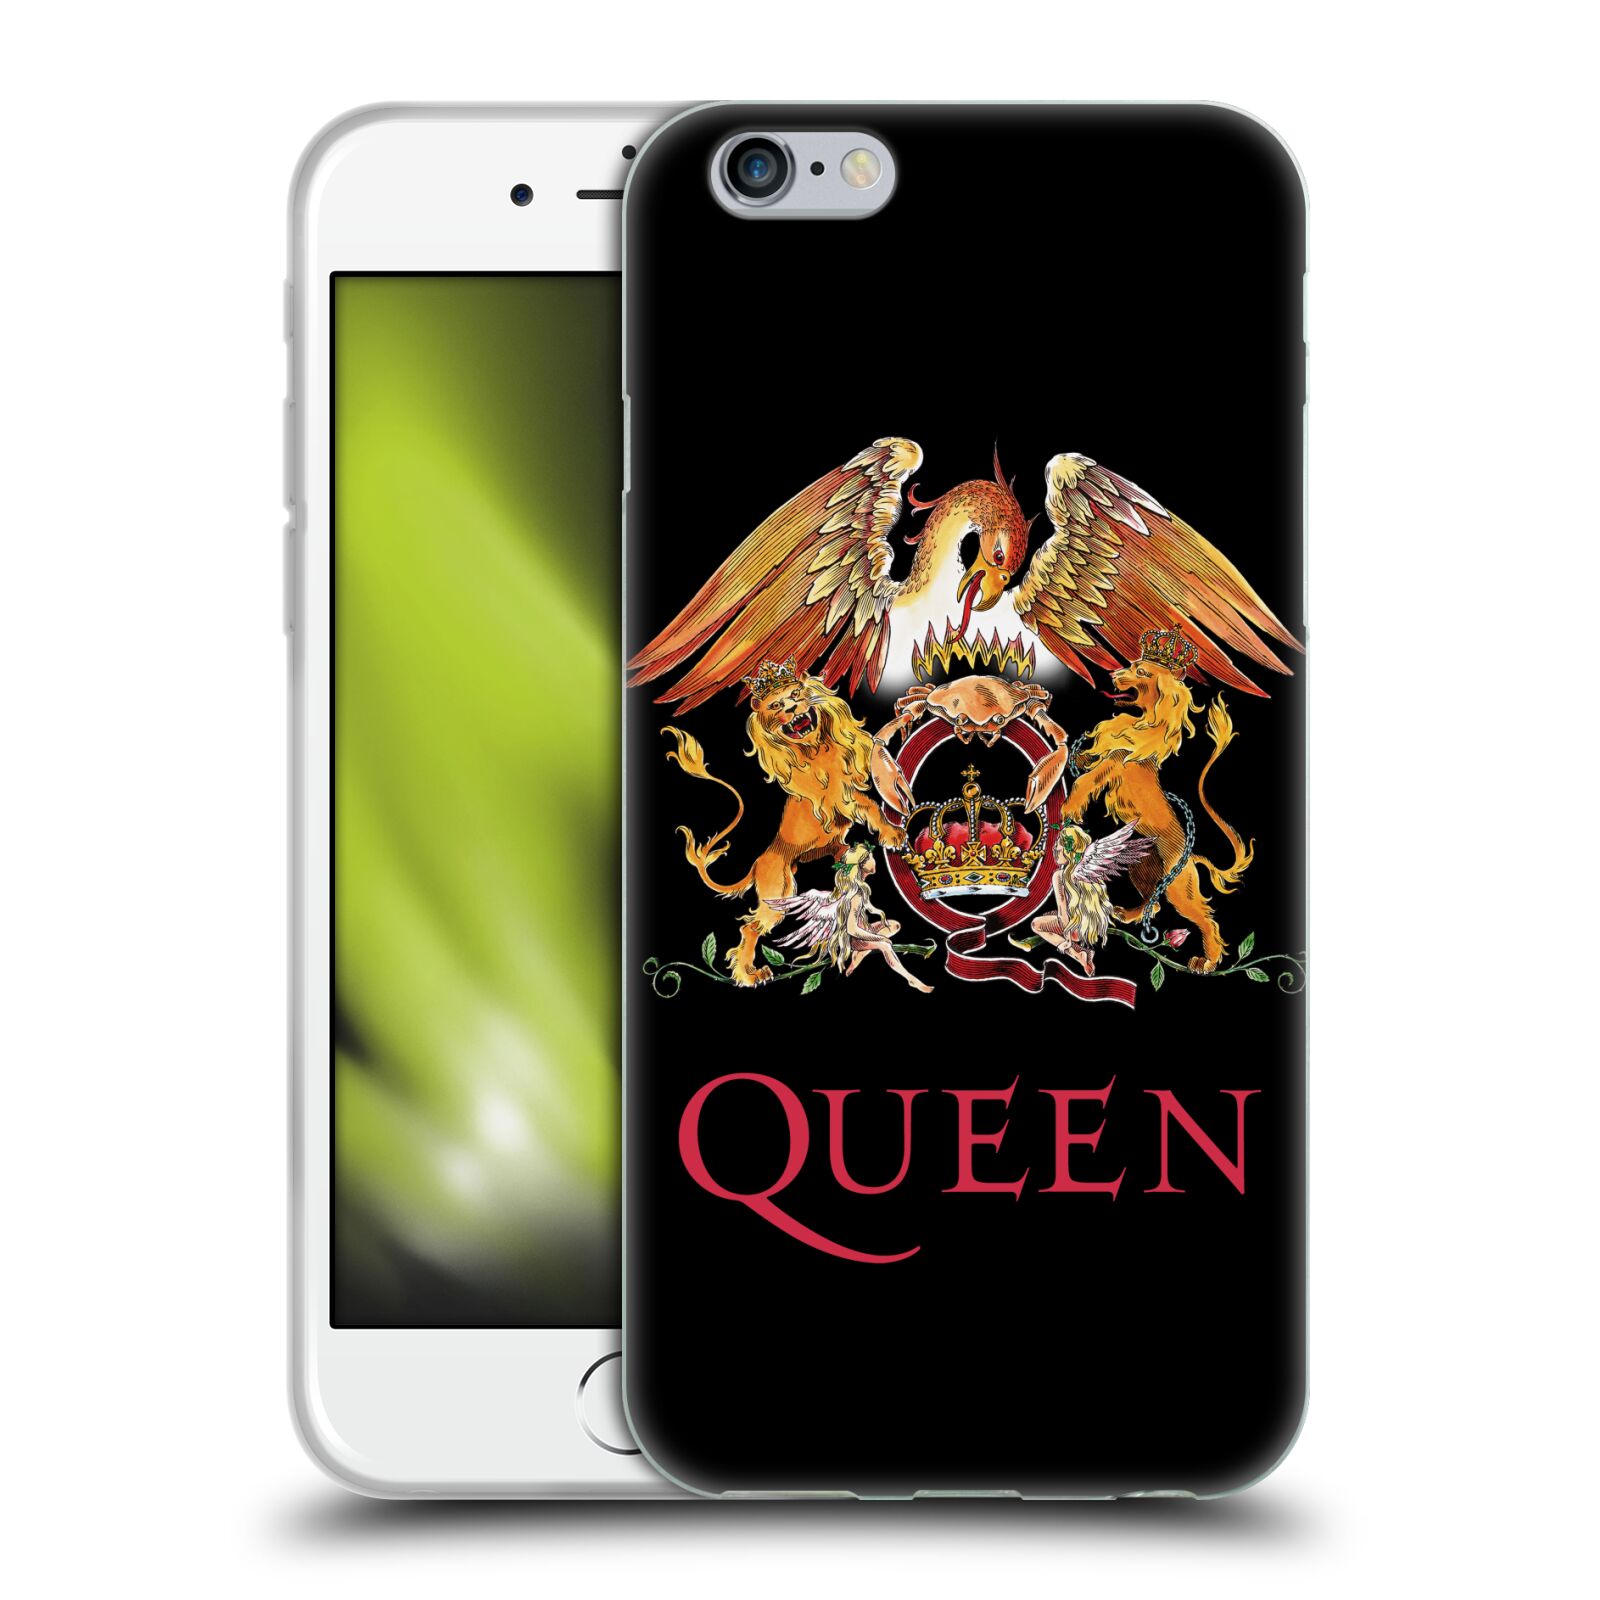 Silikonové pouzdro na mobil Apple iPhone 6 HEAD CASE Queen - Logo (Silikonový kryt či obal na mobilní telefon licencovaným motivem Queen pro Apple iPhone 6)